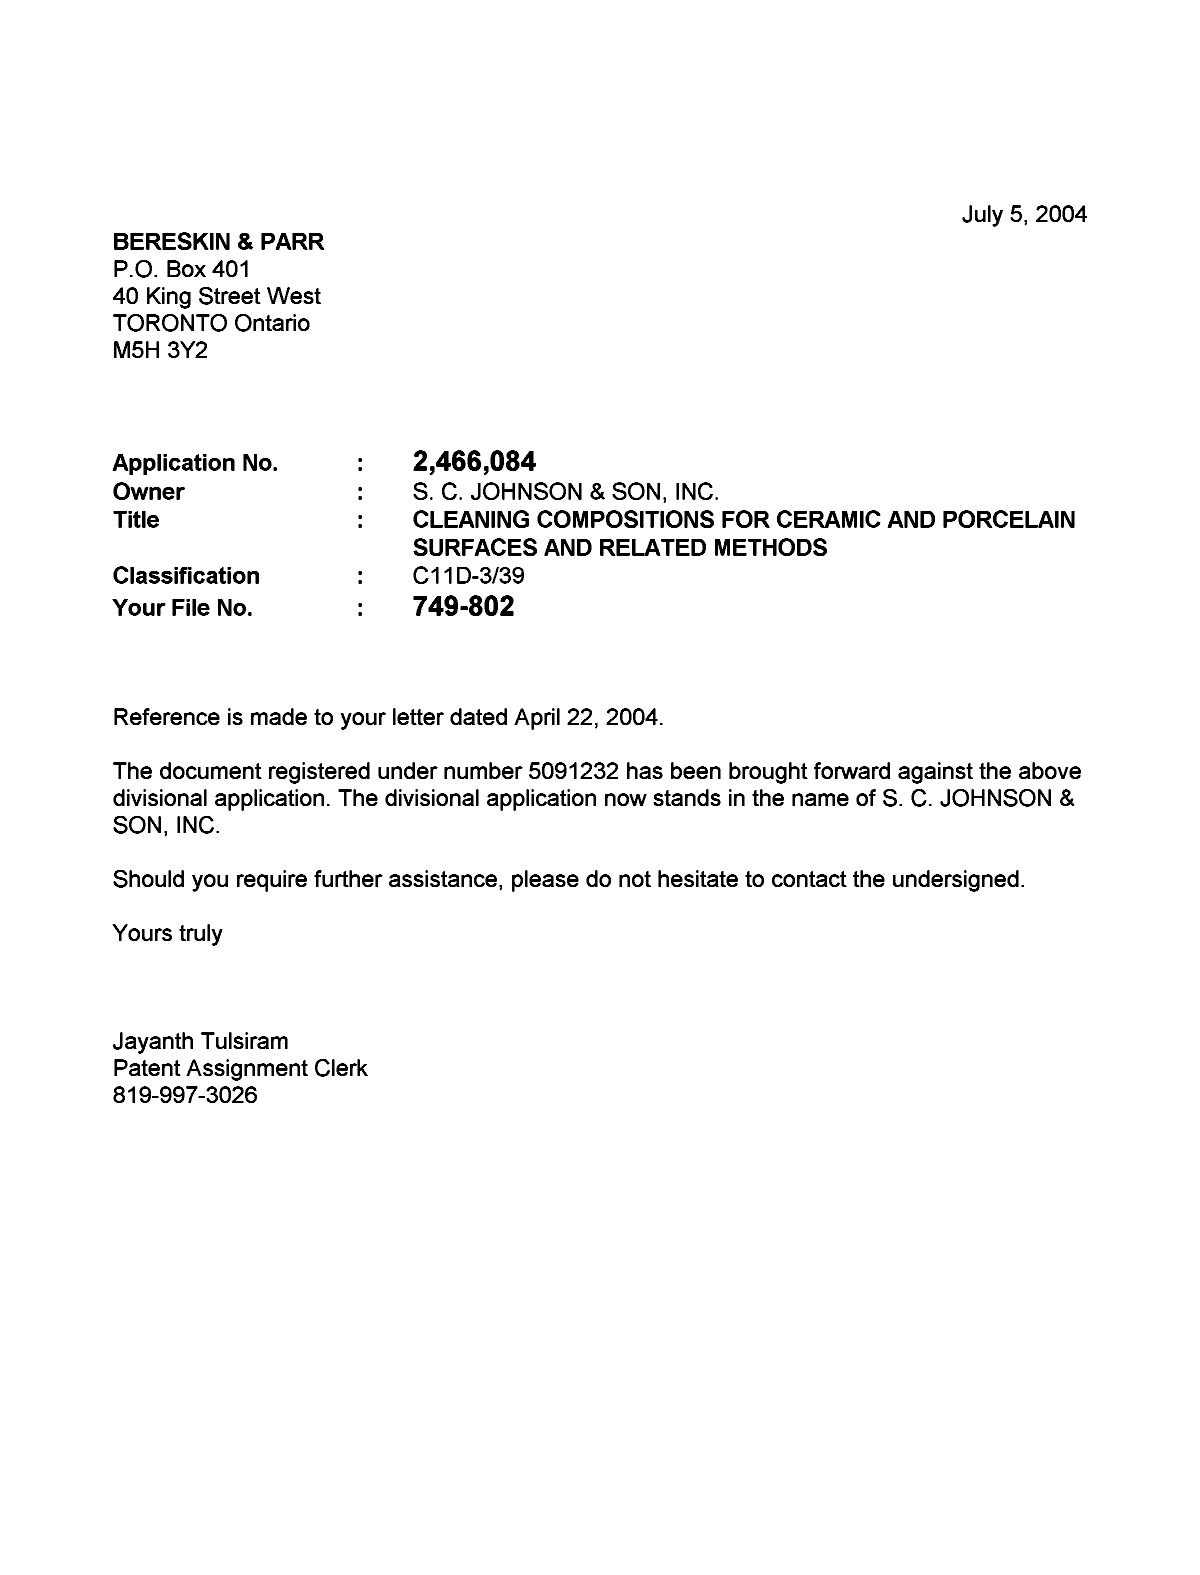 Document de brevet canadien 2316334. Correspondance 20040705. Image 1 de 1